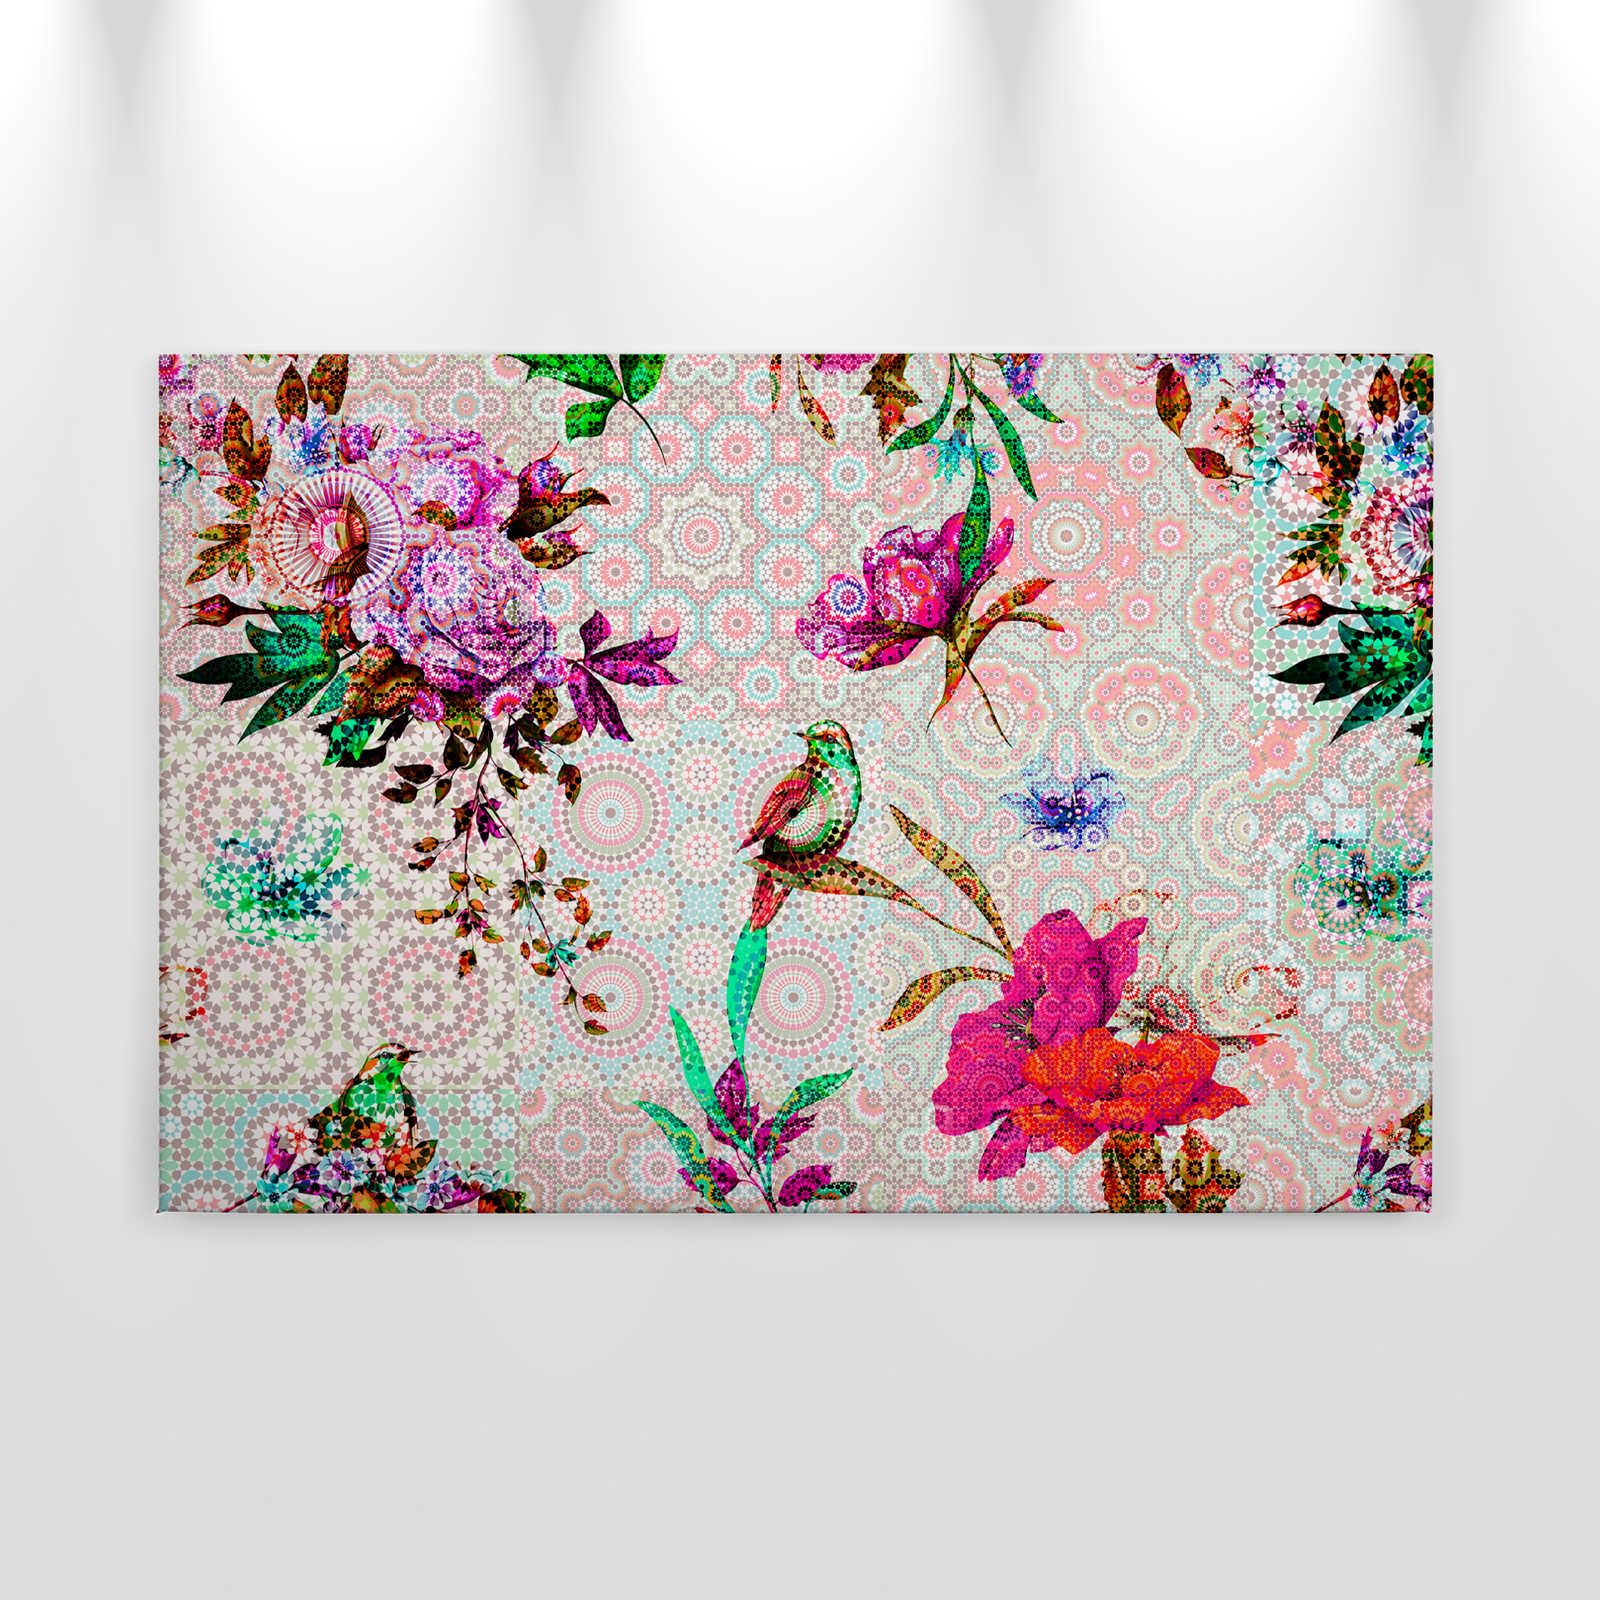             Design Leinwandbild florales Mosaik – 0,90 m x 0,60 m
        